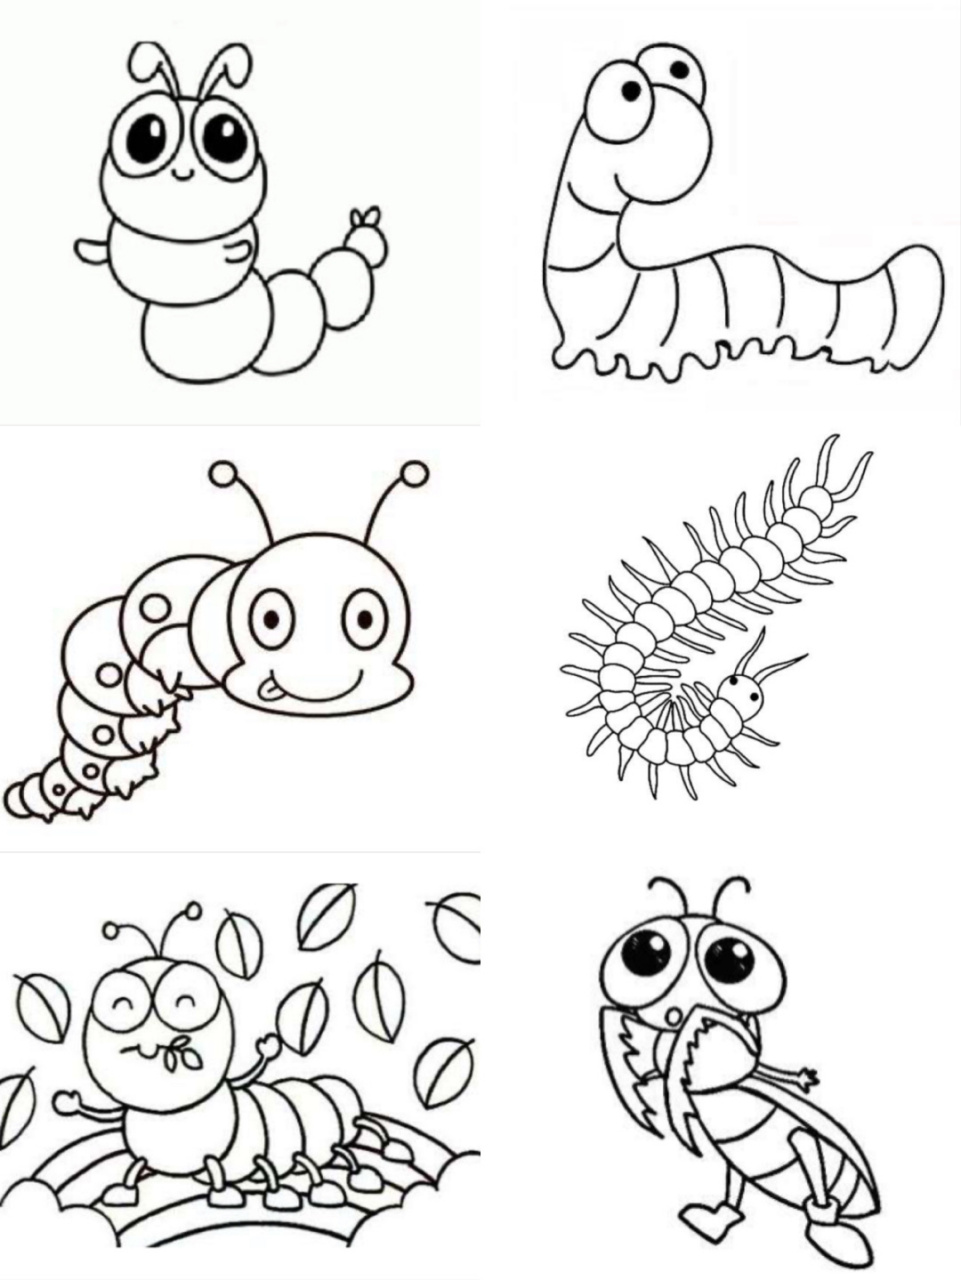 各种小虫子简笔画图片